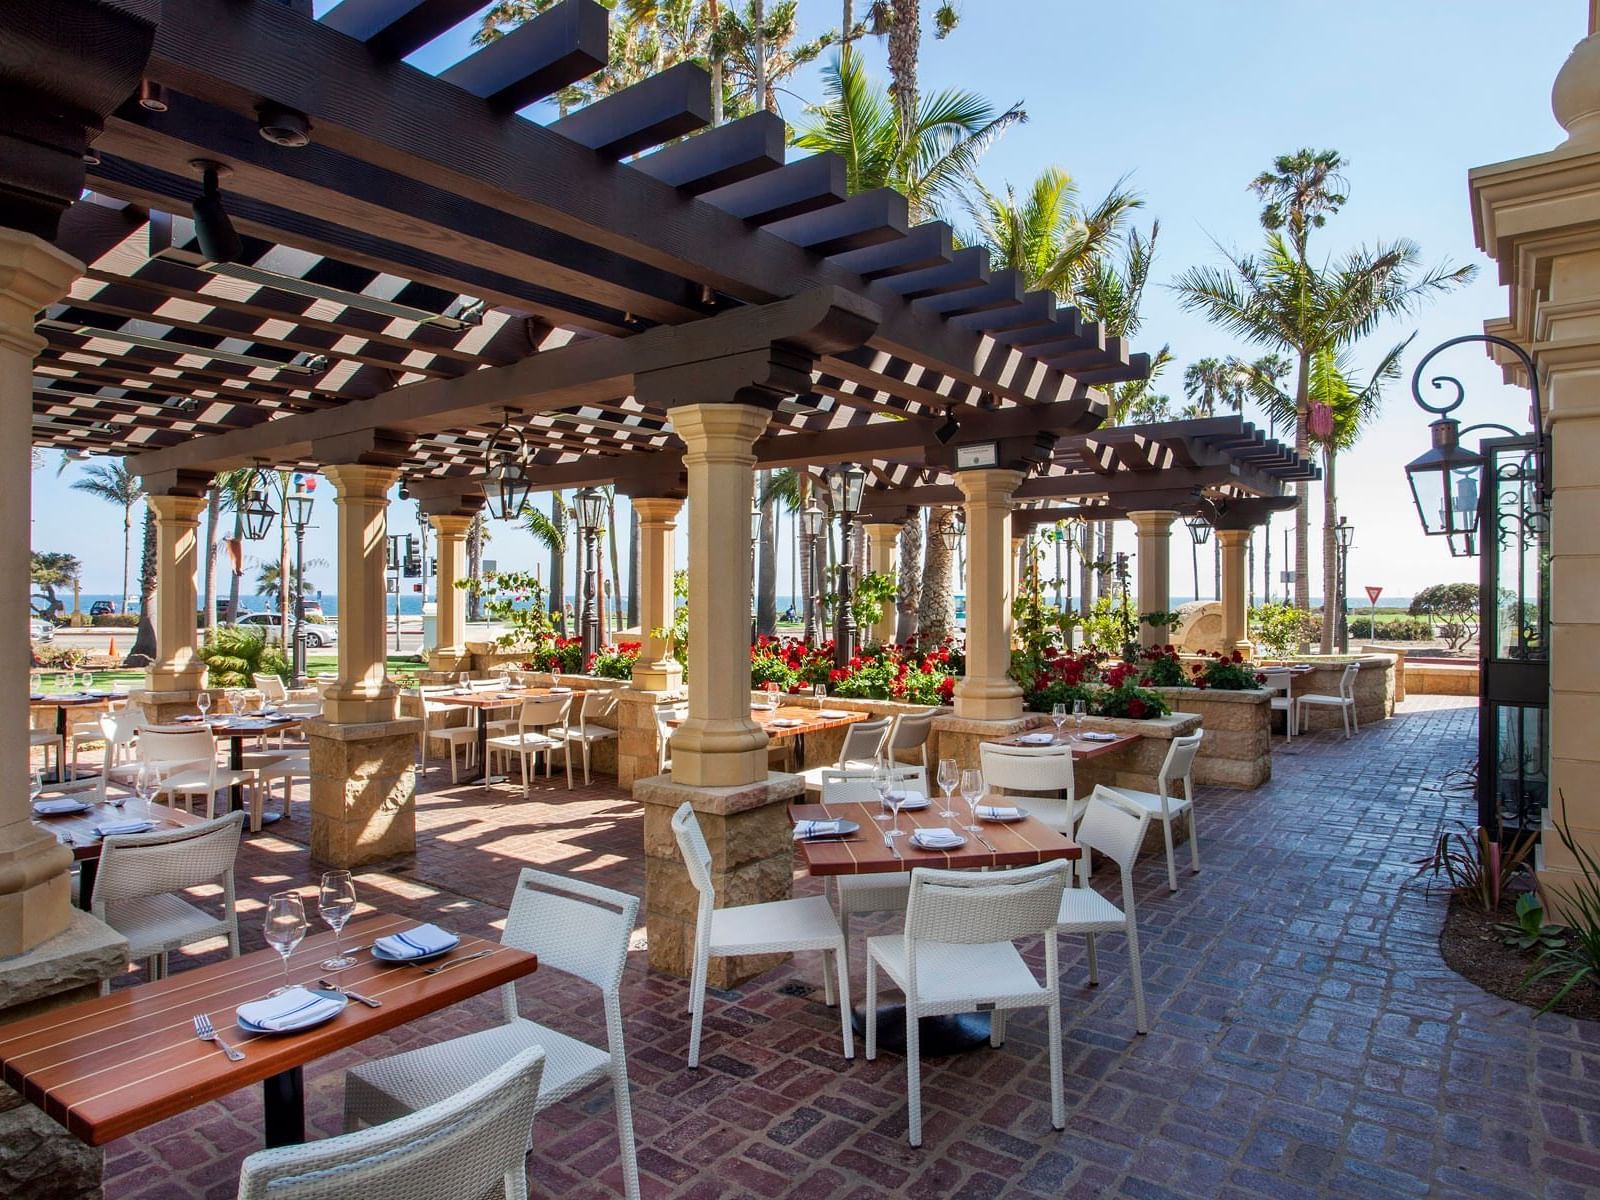 Outdoor dining area in Convivo restaurant at Santa Barbara Inn